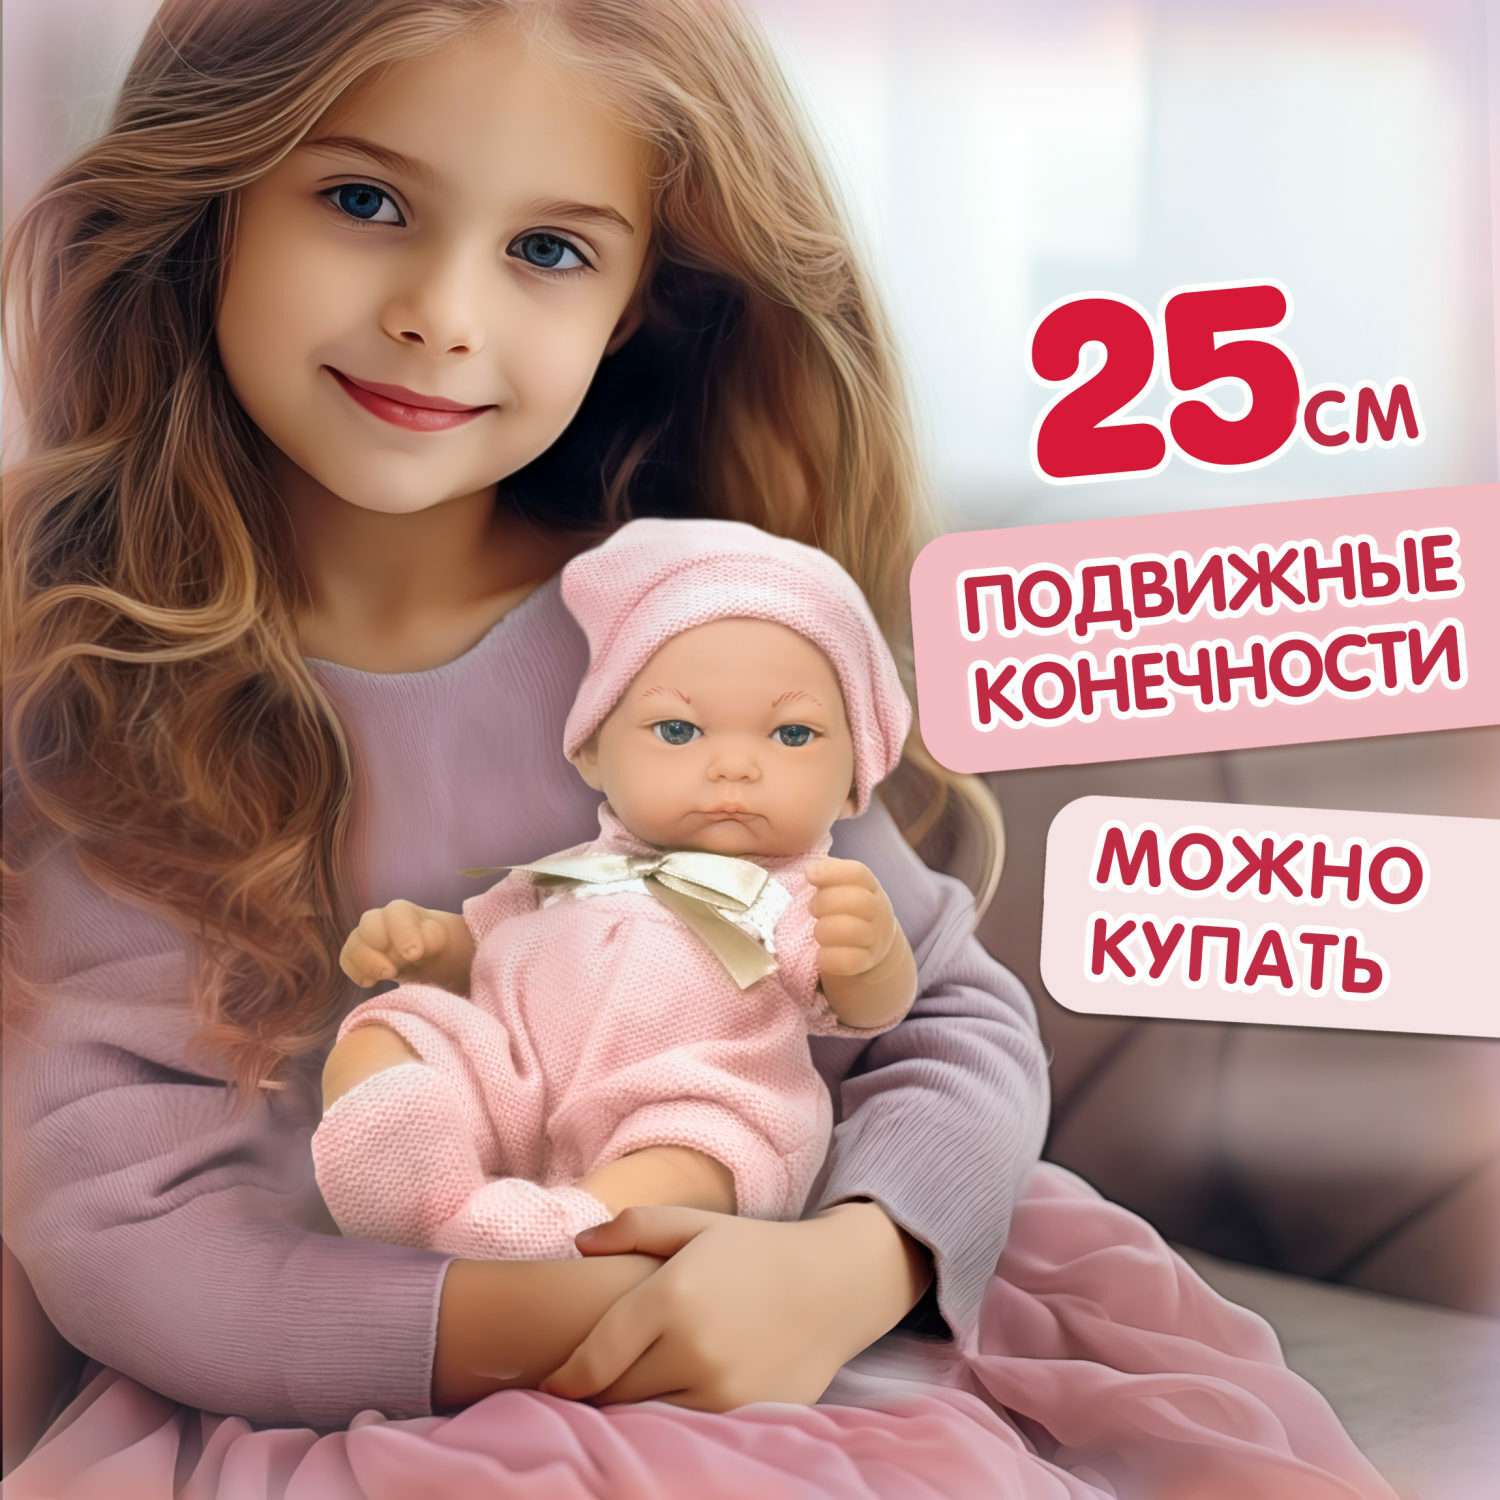 Кукла пупс 1TOY Premium реборн 25 см в розовом комбинезоне пинетках и шапочке Т15467 - фото 1